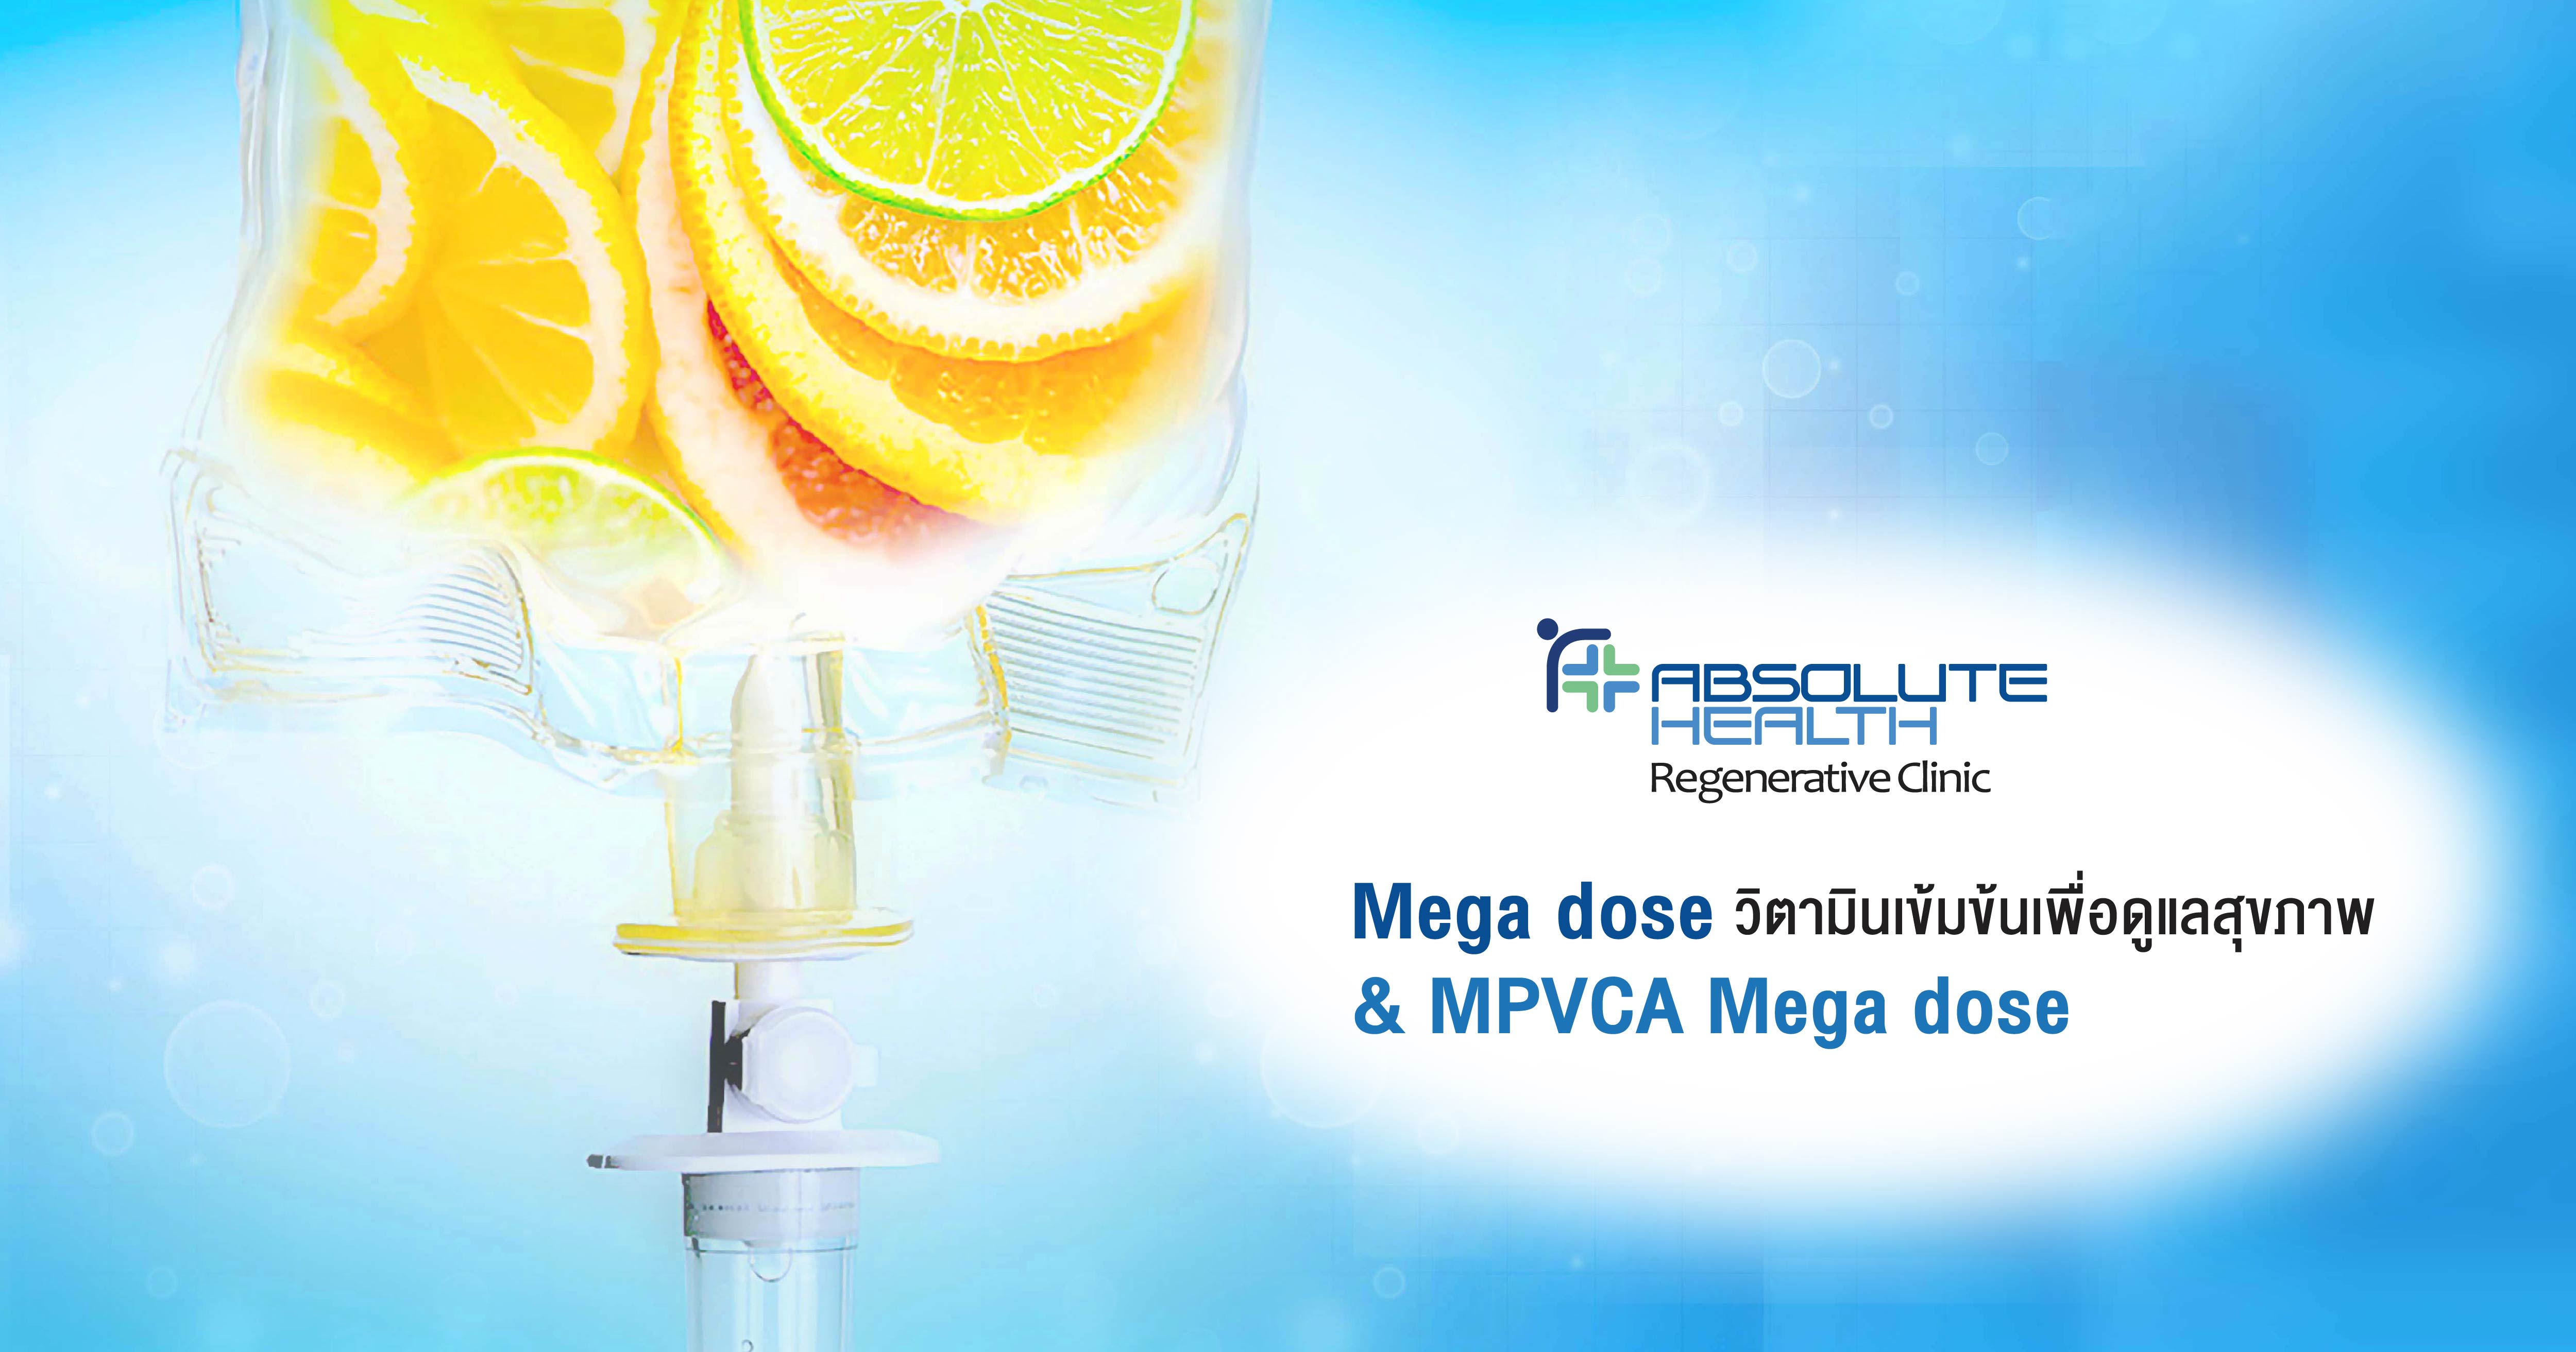 ميجادوس (Megadose) هي عبارة عن فيتامينات مركزة للرعاية الصحية و أما MPVCA Megadose لأجل مرضى السرطان